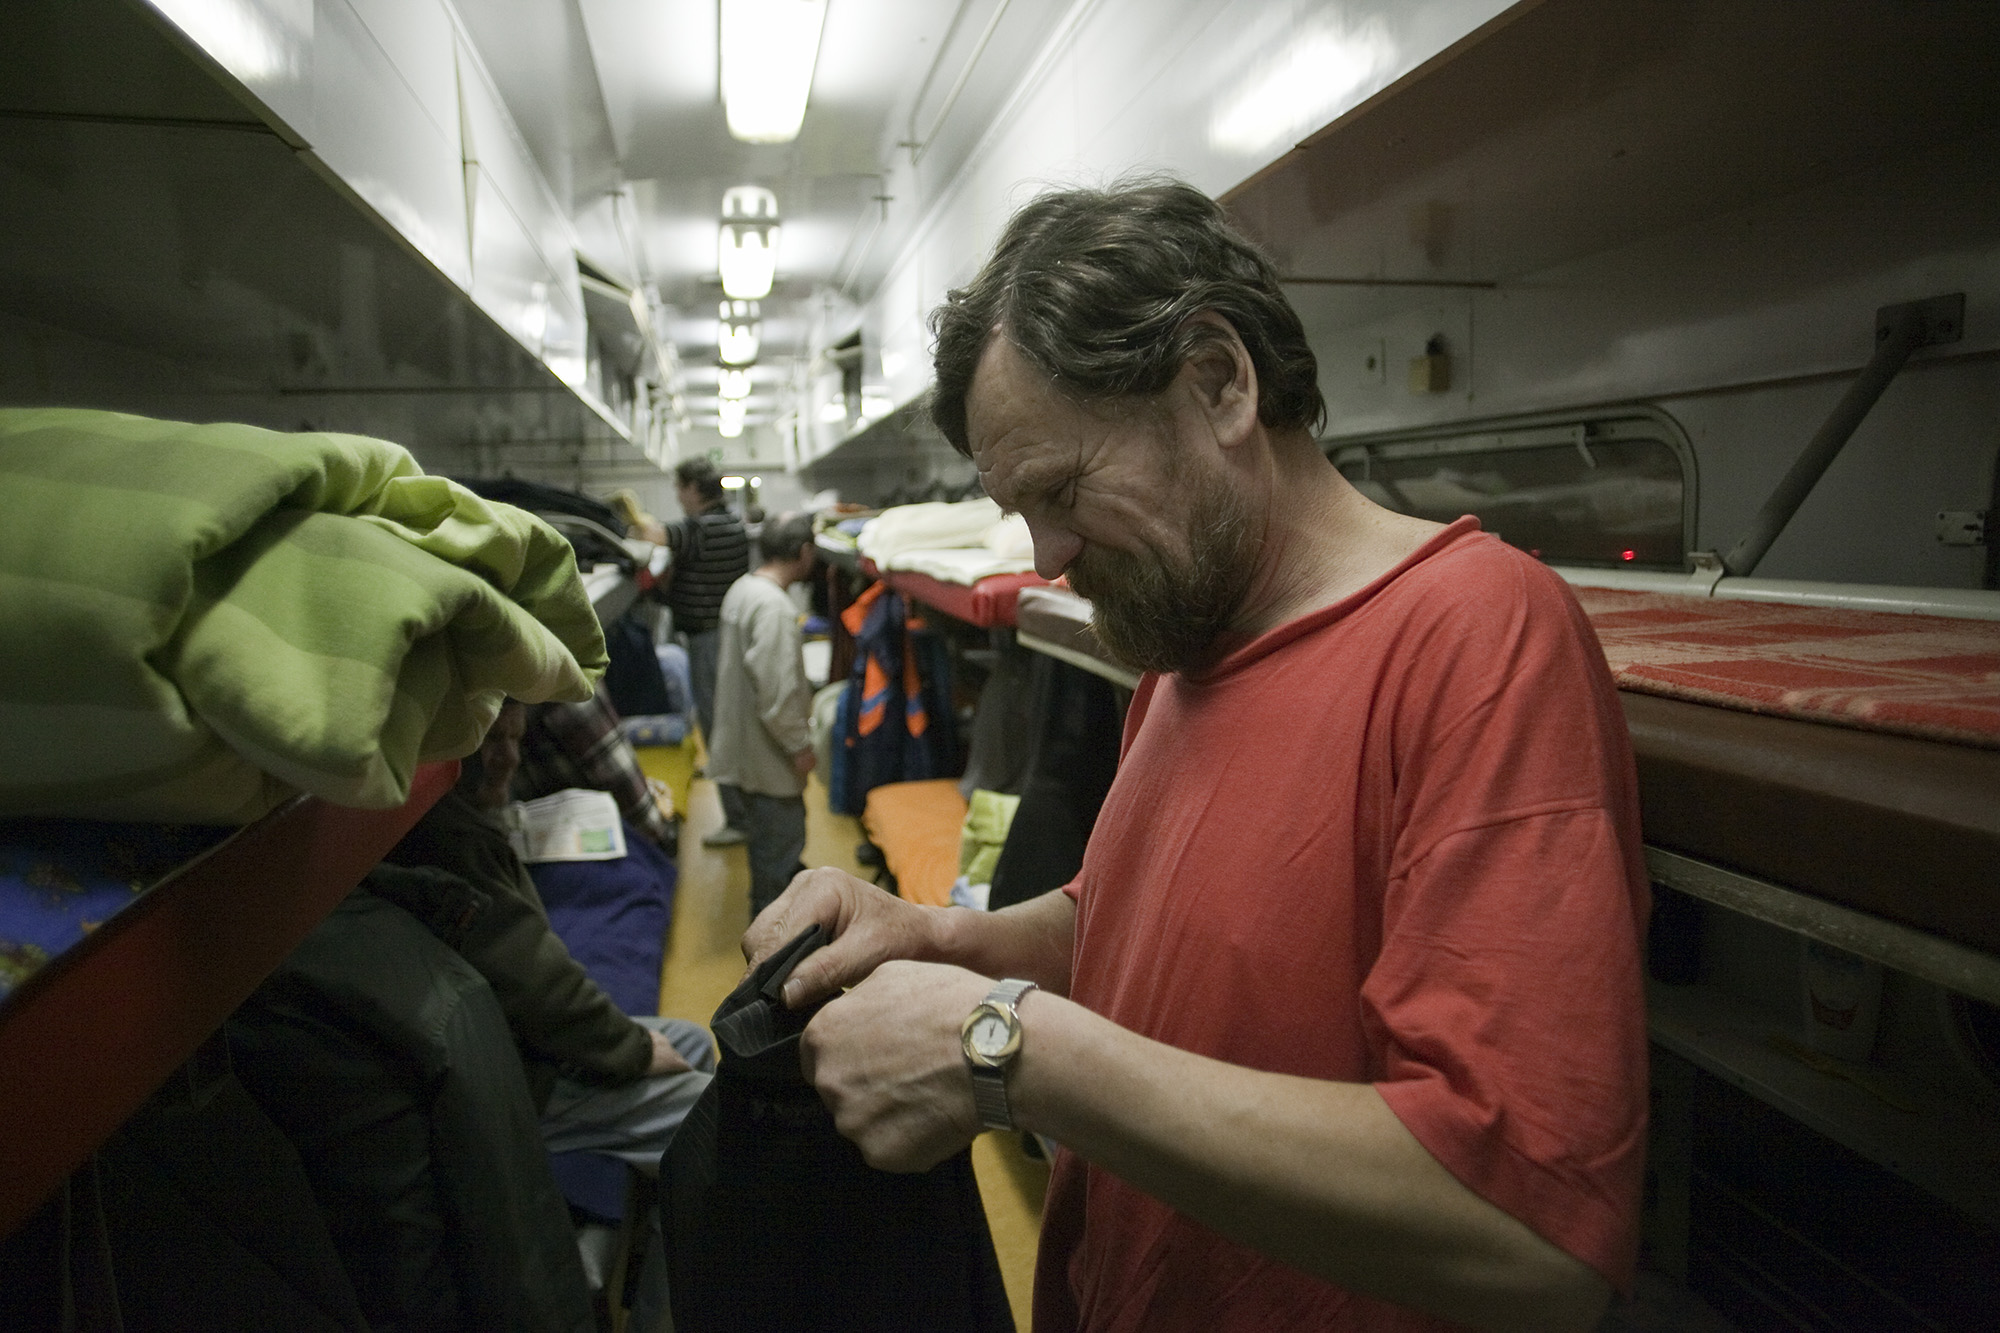 Bezárják a Nyugati pályaudvar vonatból kialakított hajléktalanszállóját